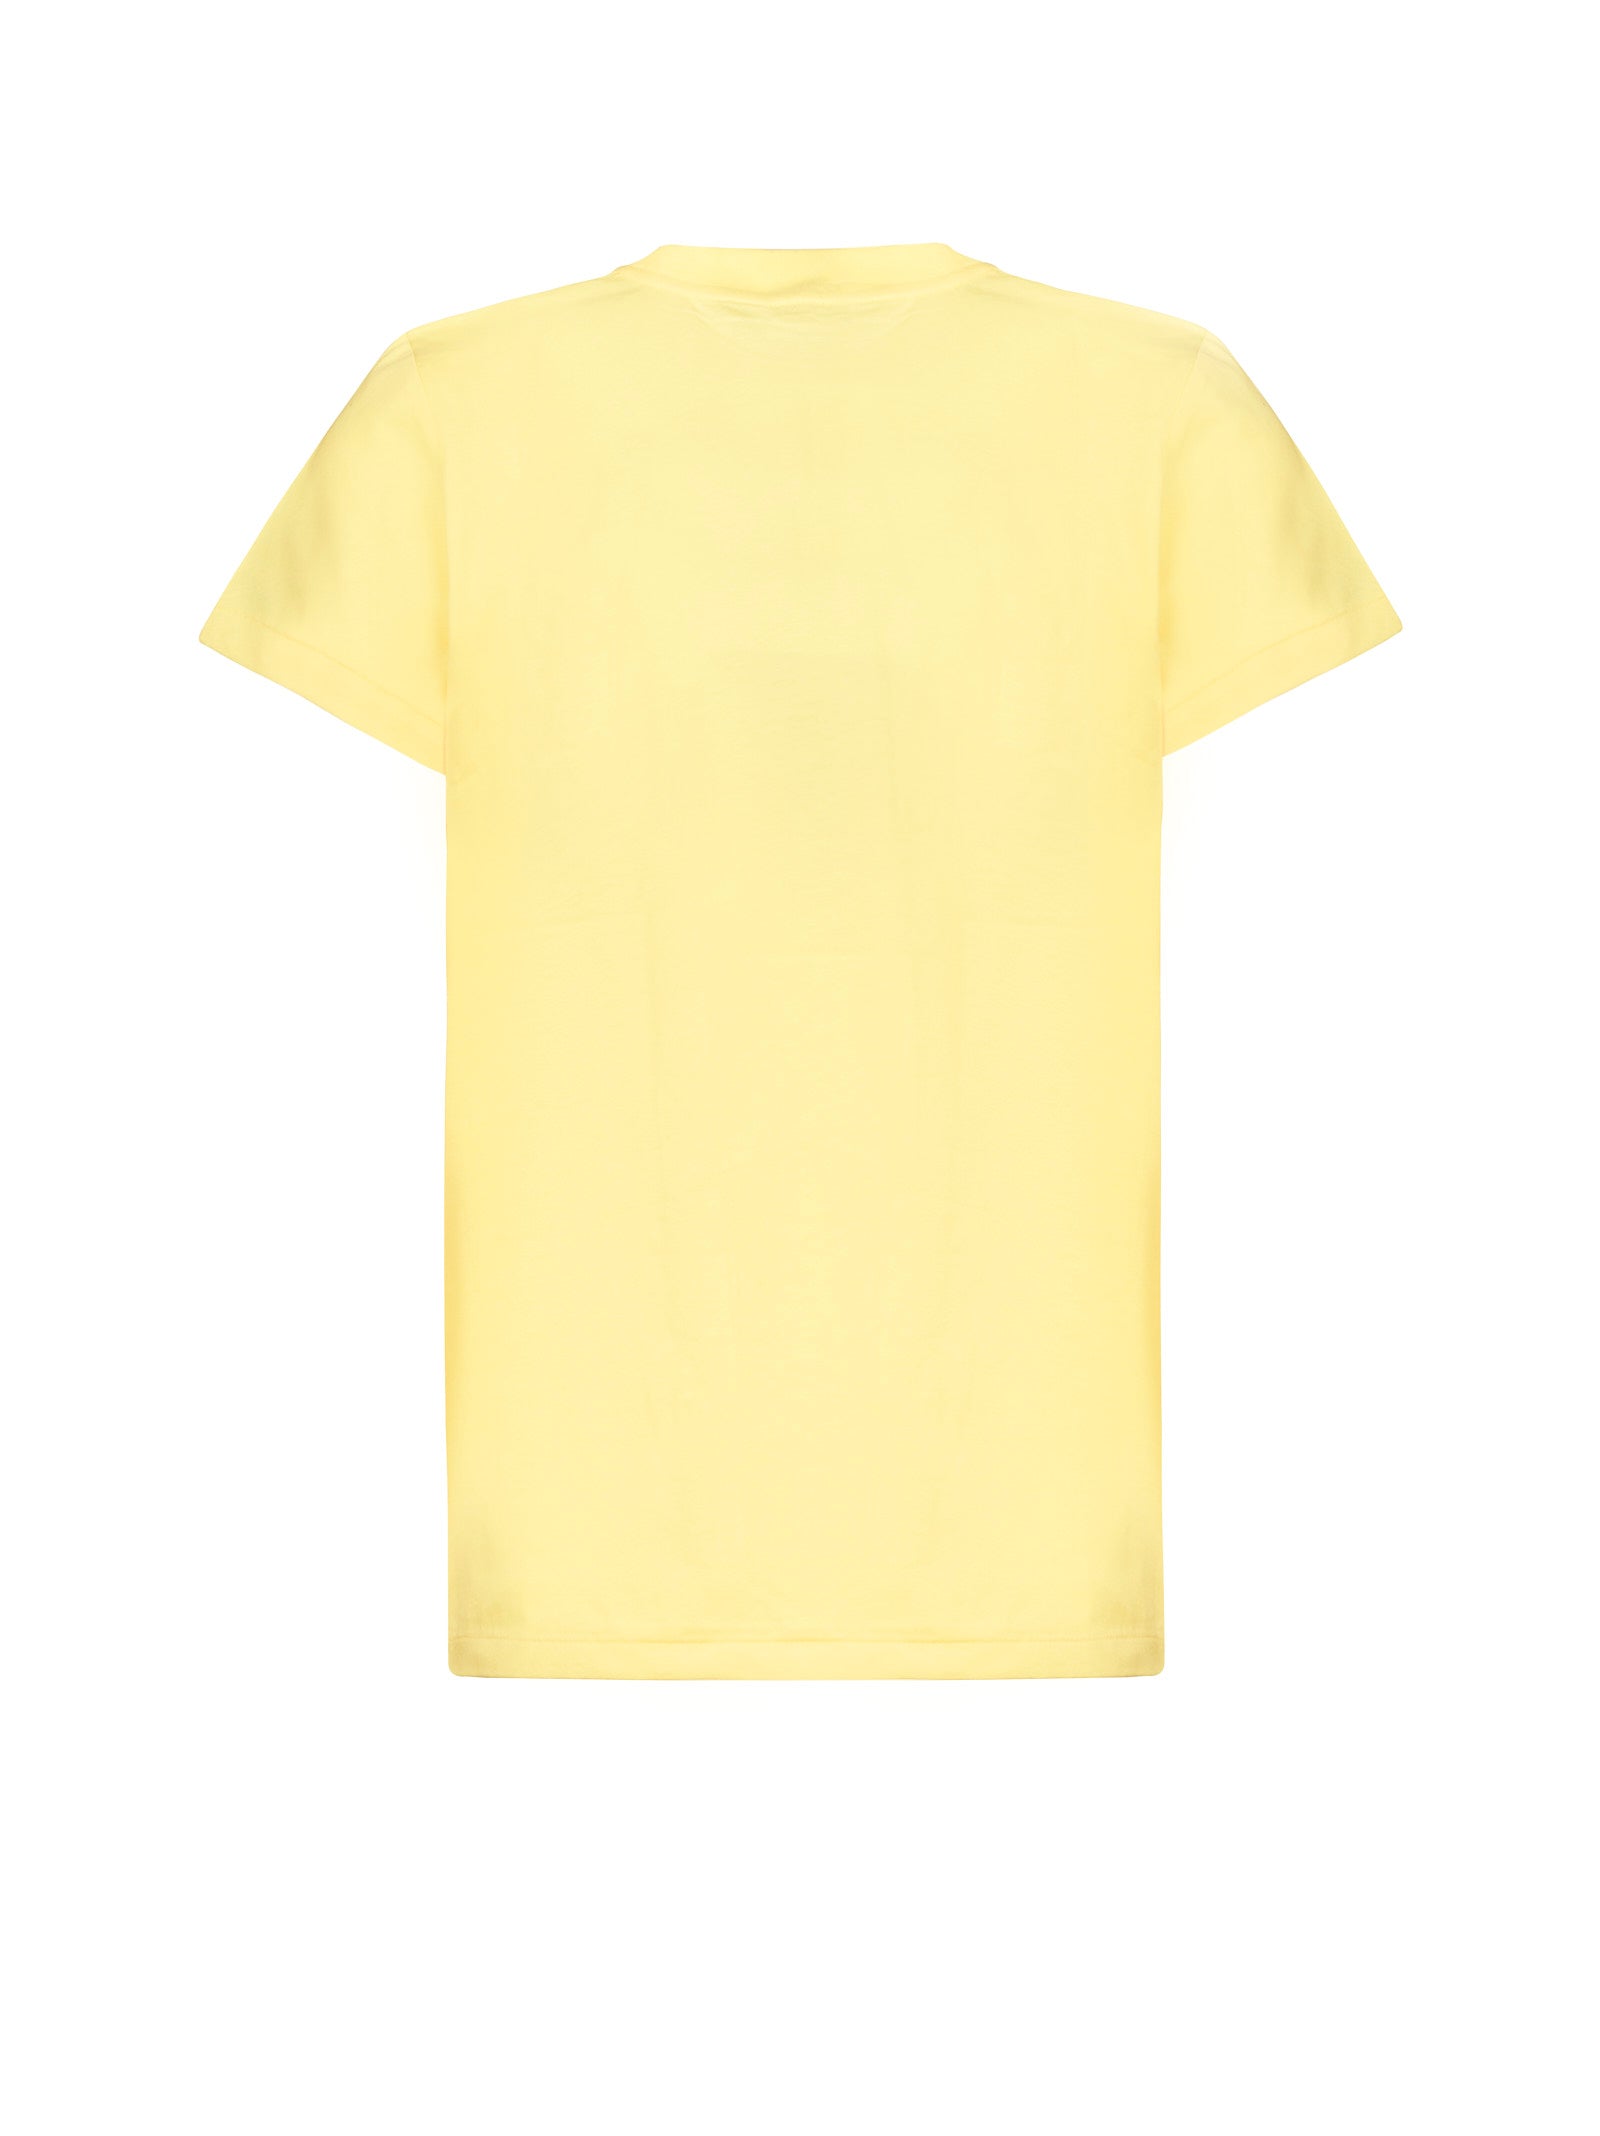 T-shirt POLO RALPH LAUREN
Yellow